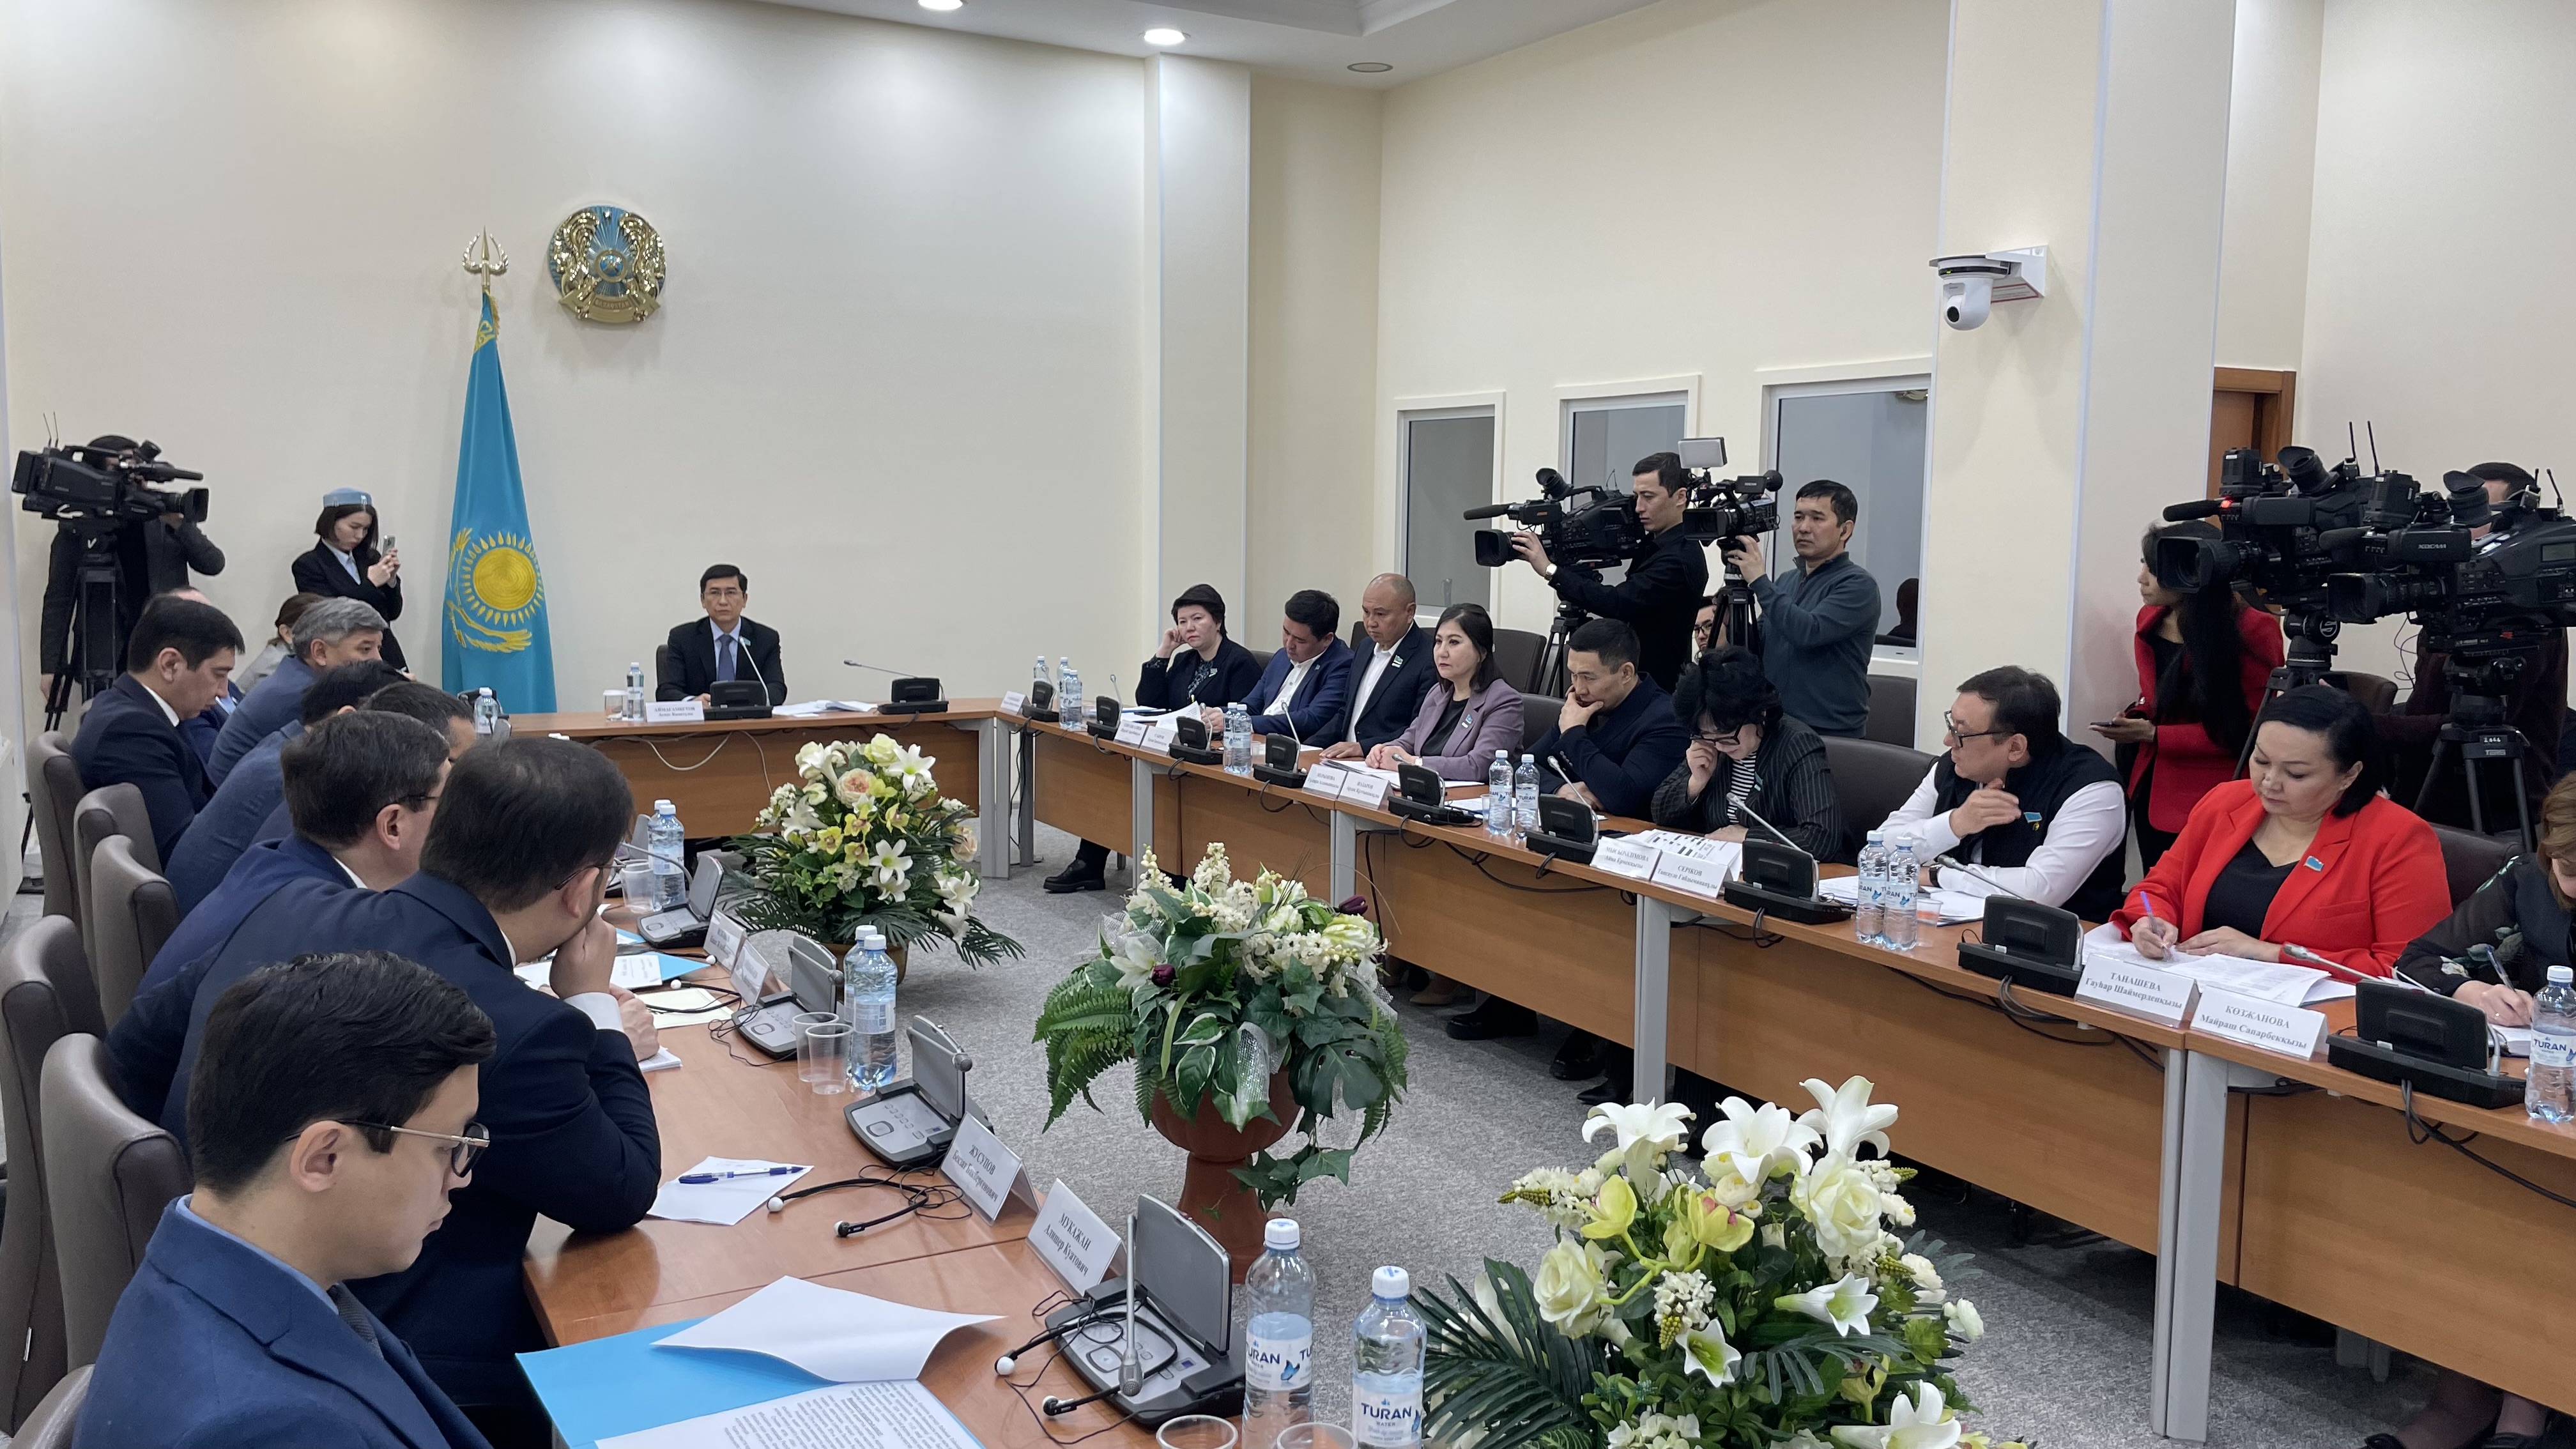  В Мажилисе состоялось заседание комитета социально-культурного развития. На встрече обсуждался вопрос одновременного использования Казахстана и России в качестве источника энергии.